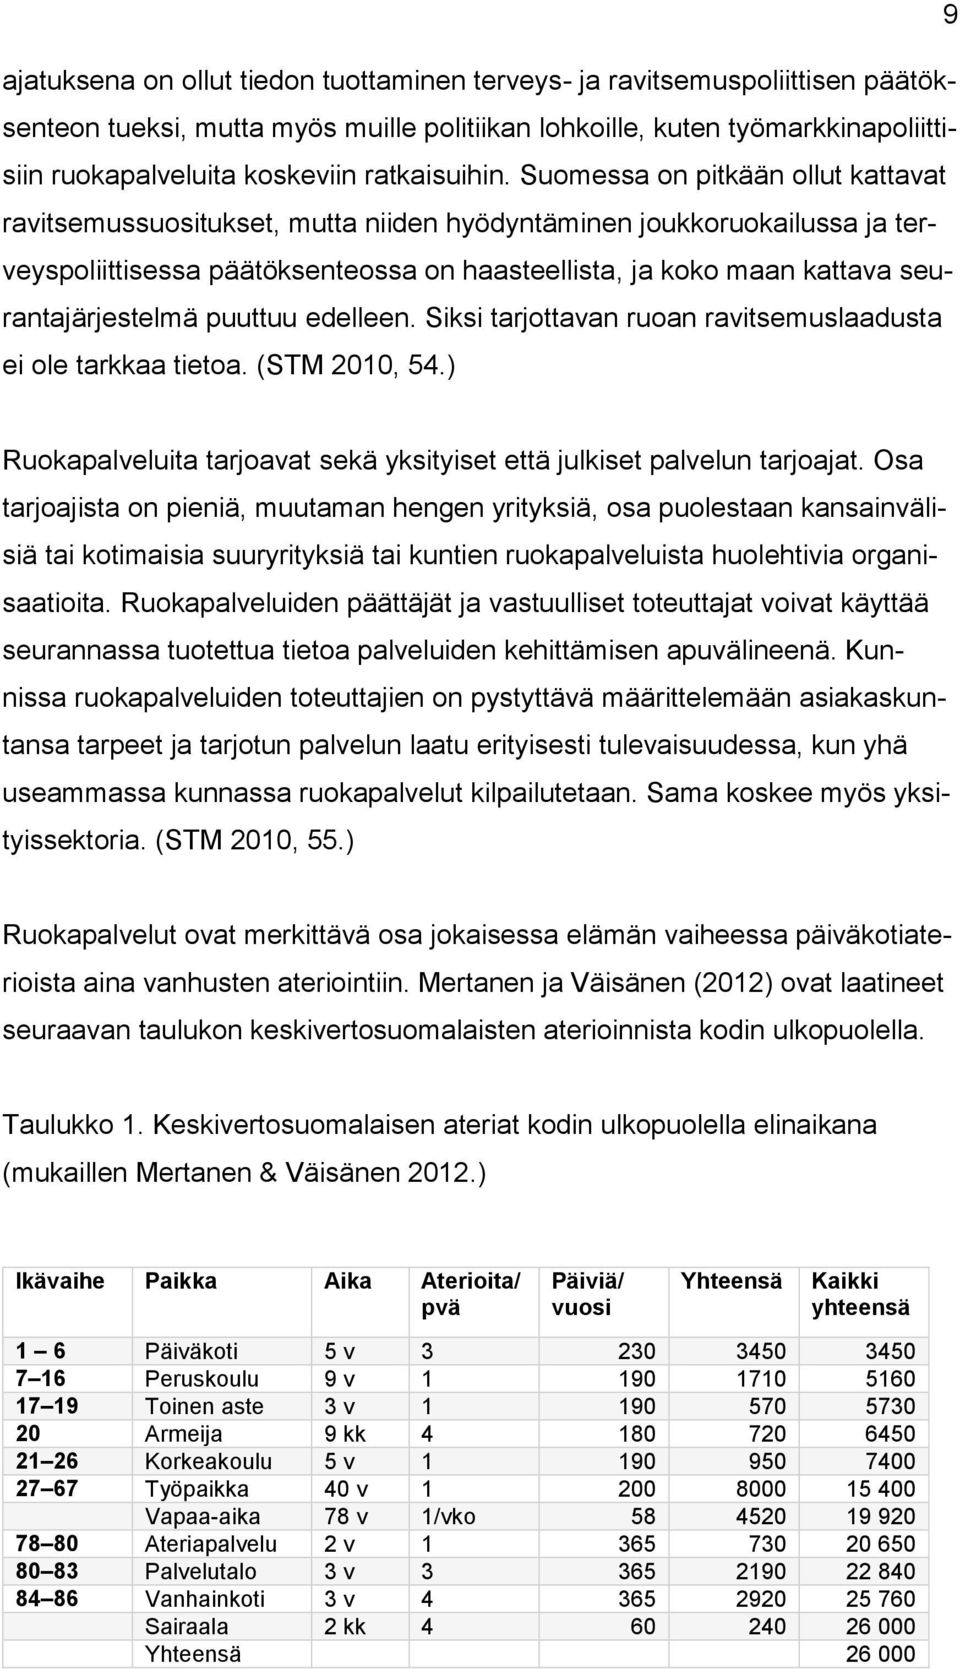 Suomessa on pitkään ollut kattavat ravitsemussuositukset, mutta niiden hyödyntäminen joukkoruokailussa ja terveyspoliittisessa päätöksenteossa on haasteellista, ja koko maan kattava